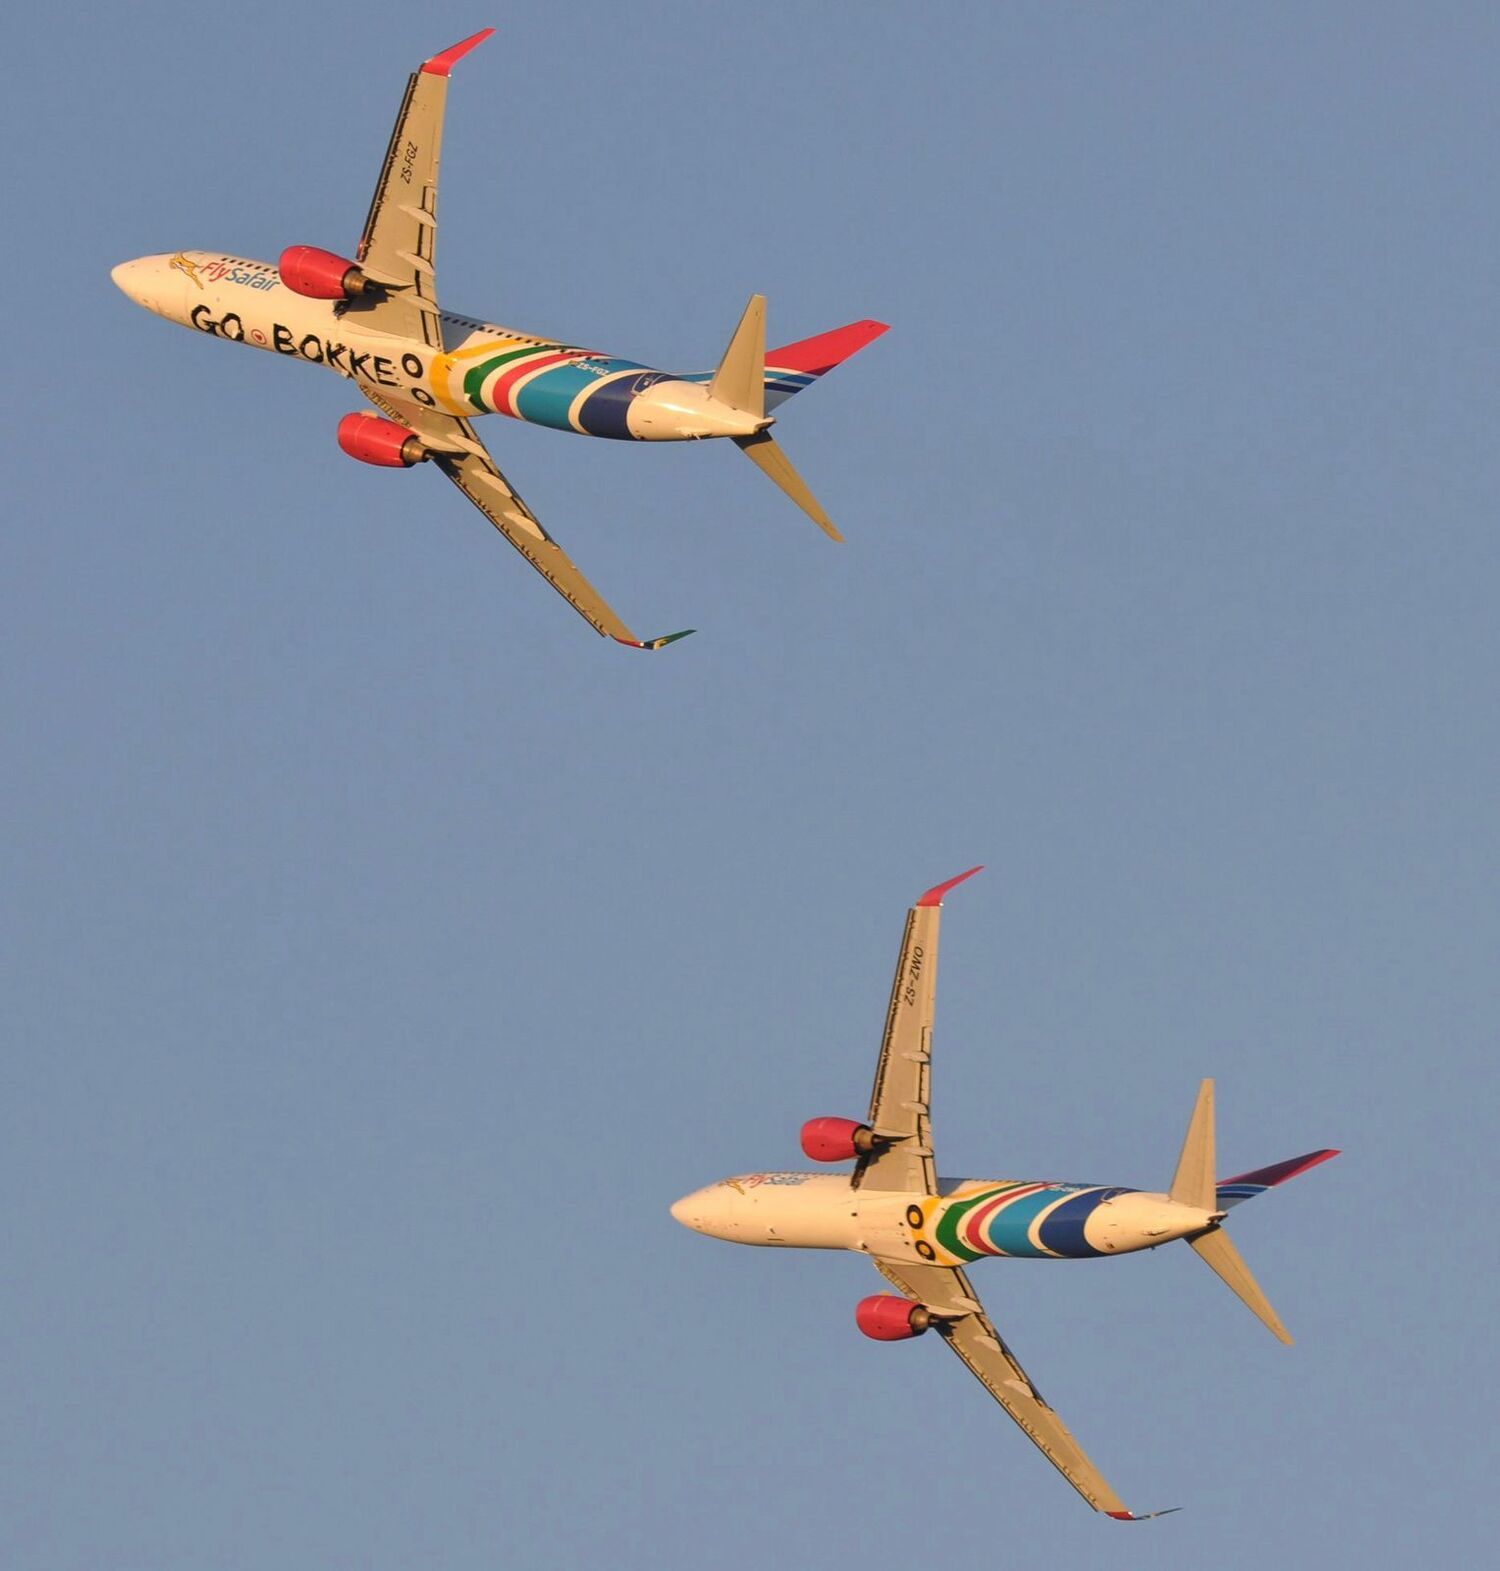 Aeronaves da FlySafair com a inscrição "Go Bokke", como é chamada a equipe de rugby da África do Sul,
 sobrevoam o estádio de Pretória